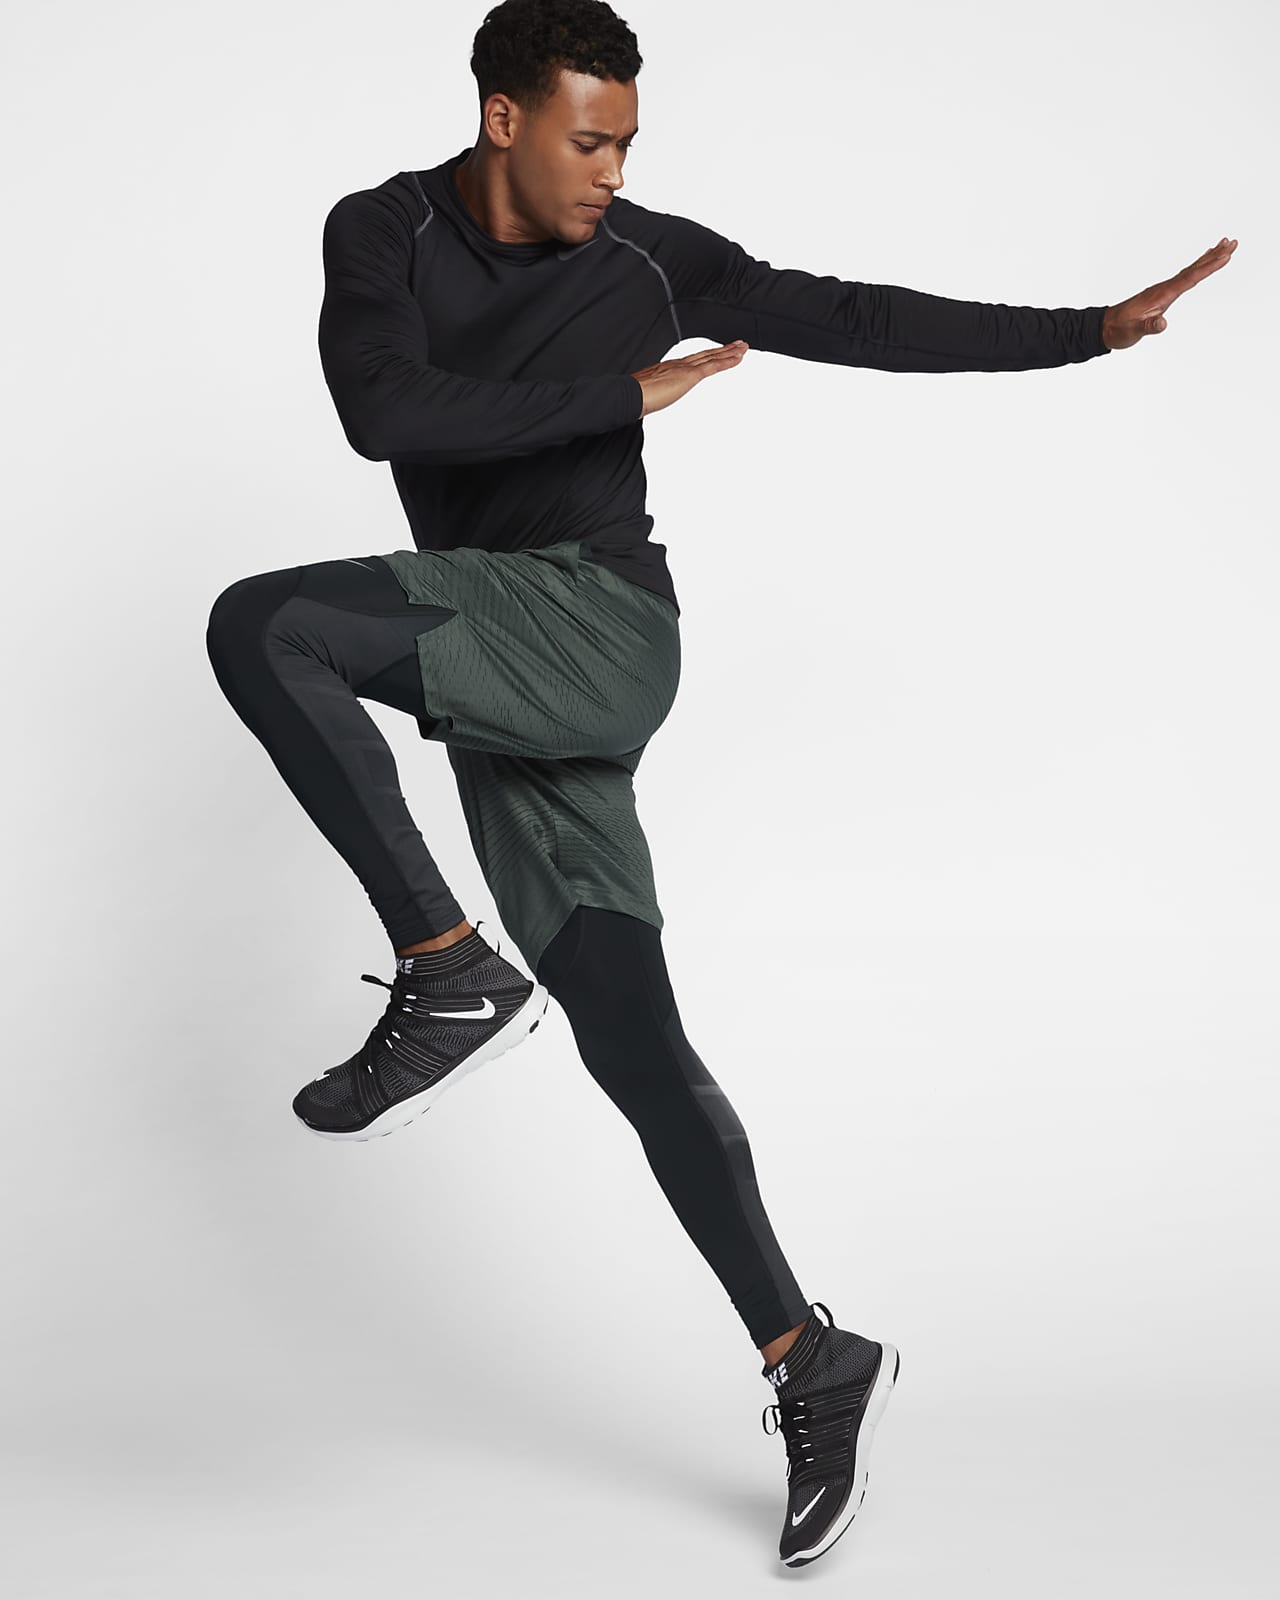 Nike Men's Dri Fit Max Pro Combat Hyperwarm Compression Tights Black Volt